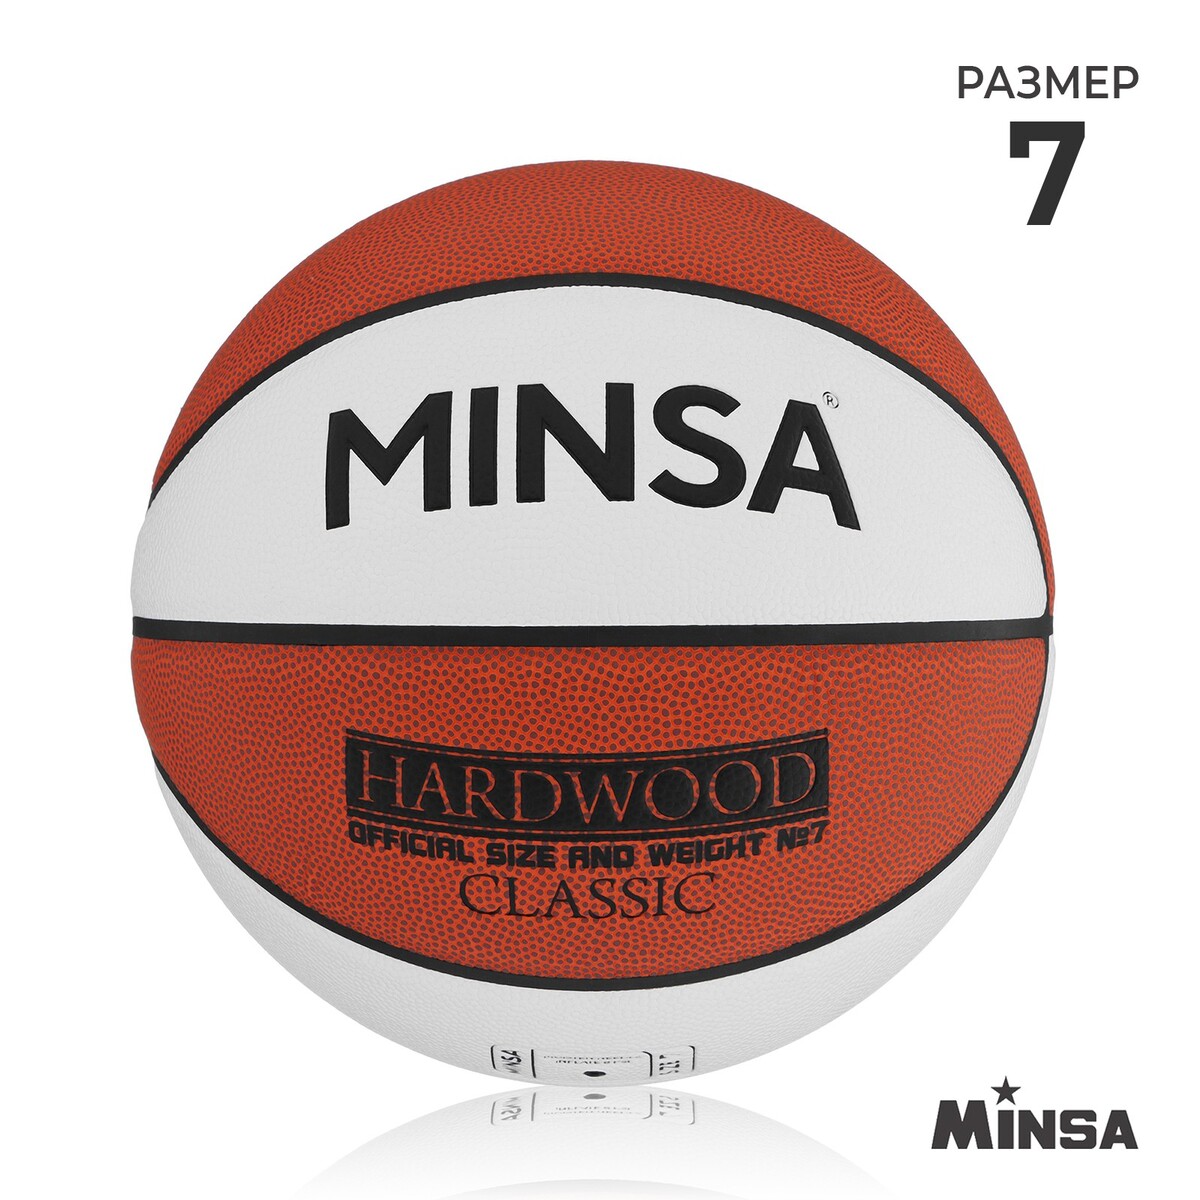 Баскетбольный мяч minsa hardwood classic, pu, клееный, 8 панелей, р. 7 мяч баскетбольный minsa air power пвх клееный 8 панелей р 7